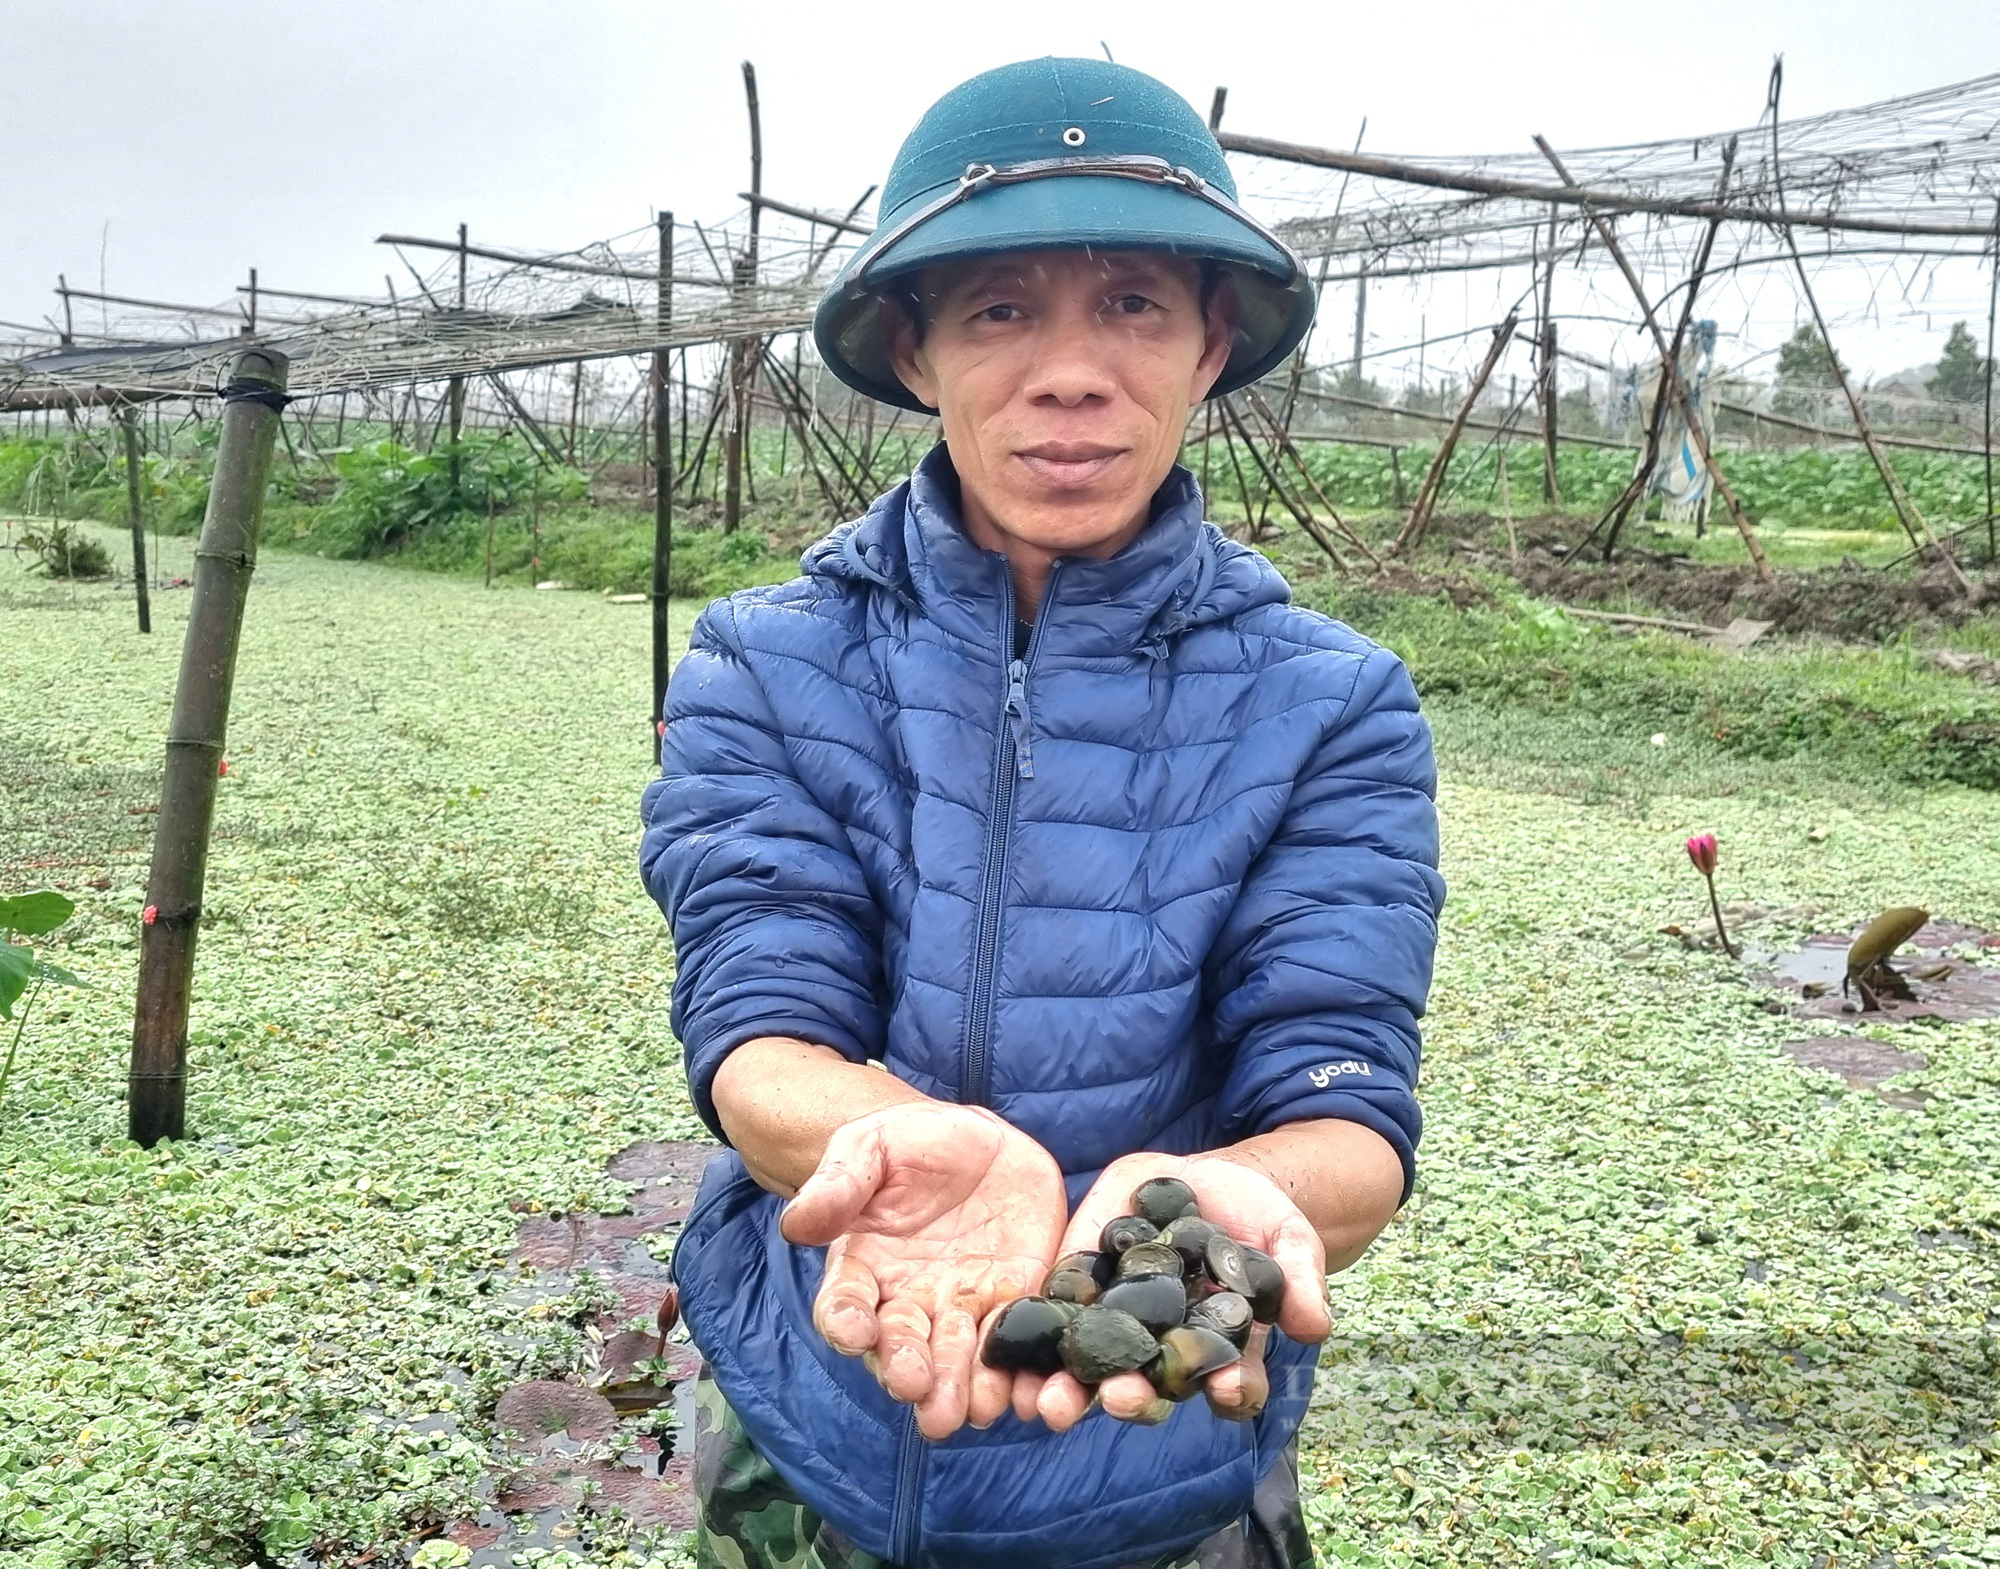 Rời nghề giáo viên về trồng cây khoai môn ngọt Thái Lan lấy ngó lãi 300 triệu đồng/năm - Ảnh 10.